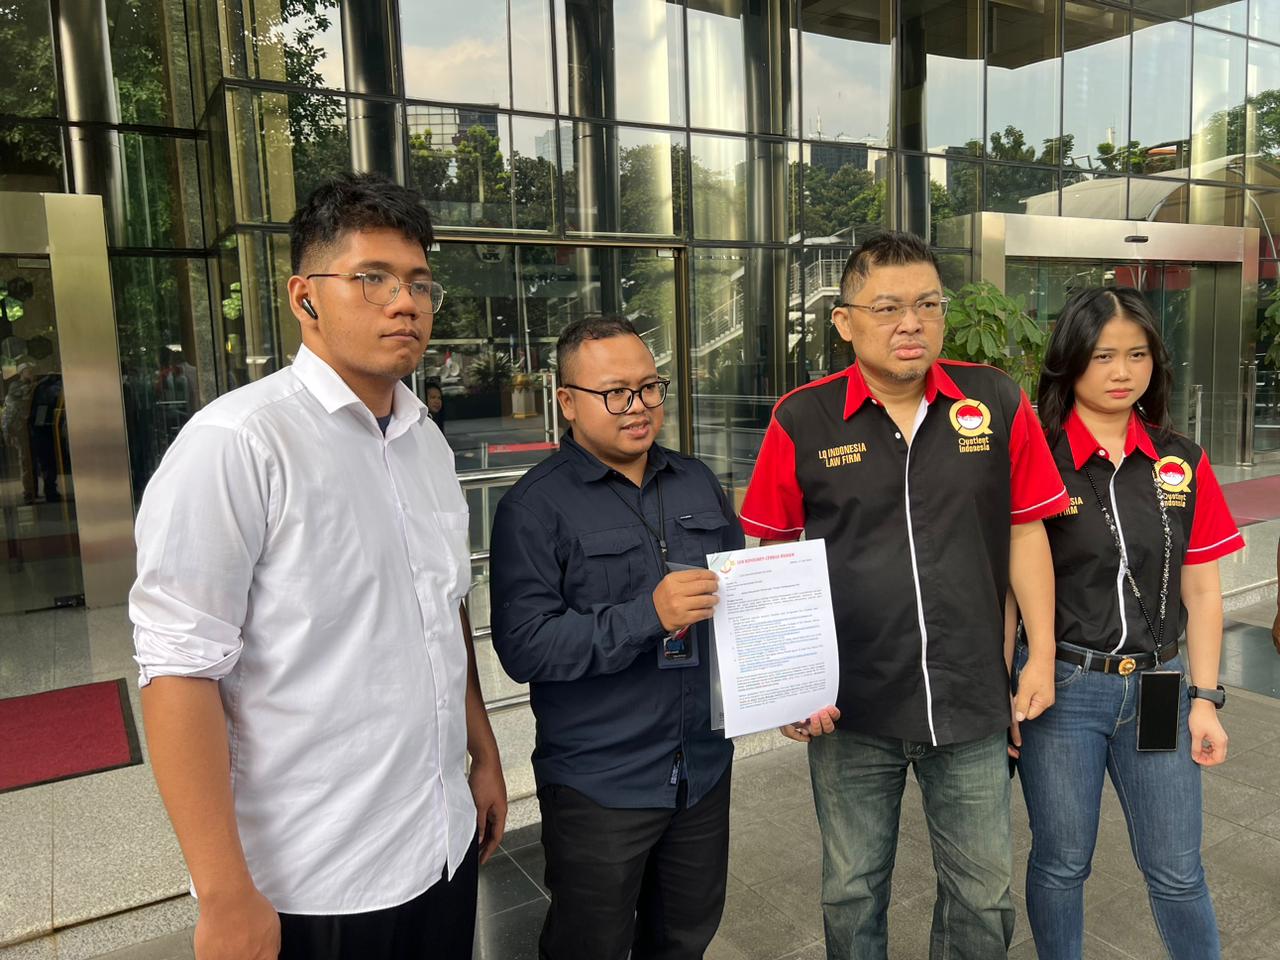 Geruduk KPK, Alvin Lim Adukan Anggota Wantimpres Atas Dugaan Skandal Korupsi Rp20 Triliun!